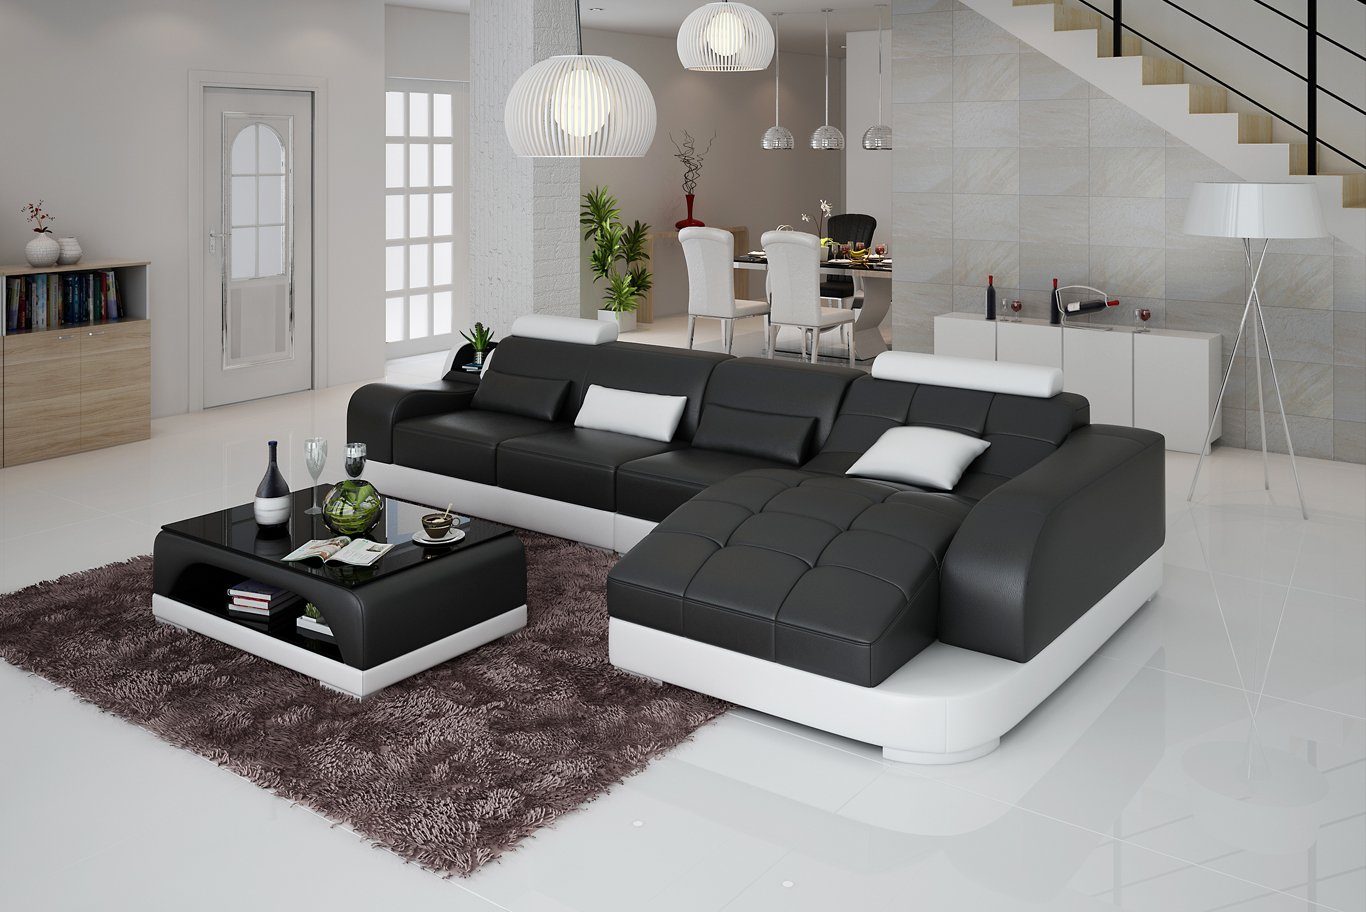 JVmoebel Ecksofa Ecksofa L Form Stoff Couch Wohnlandschaft Garnitur Design, Made in Europe Schwarz/Weiß